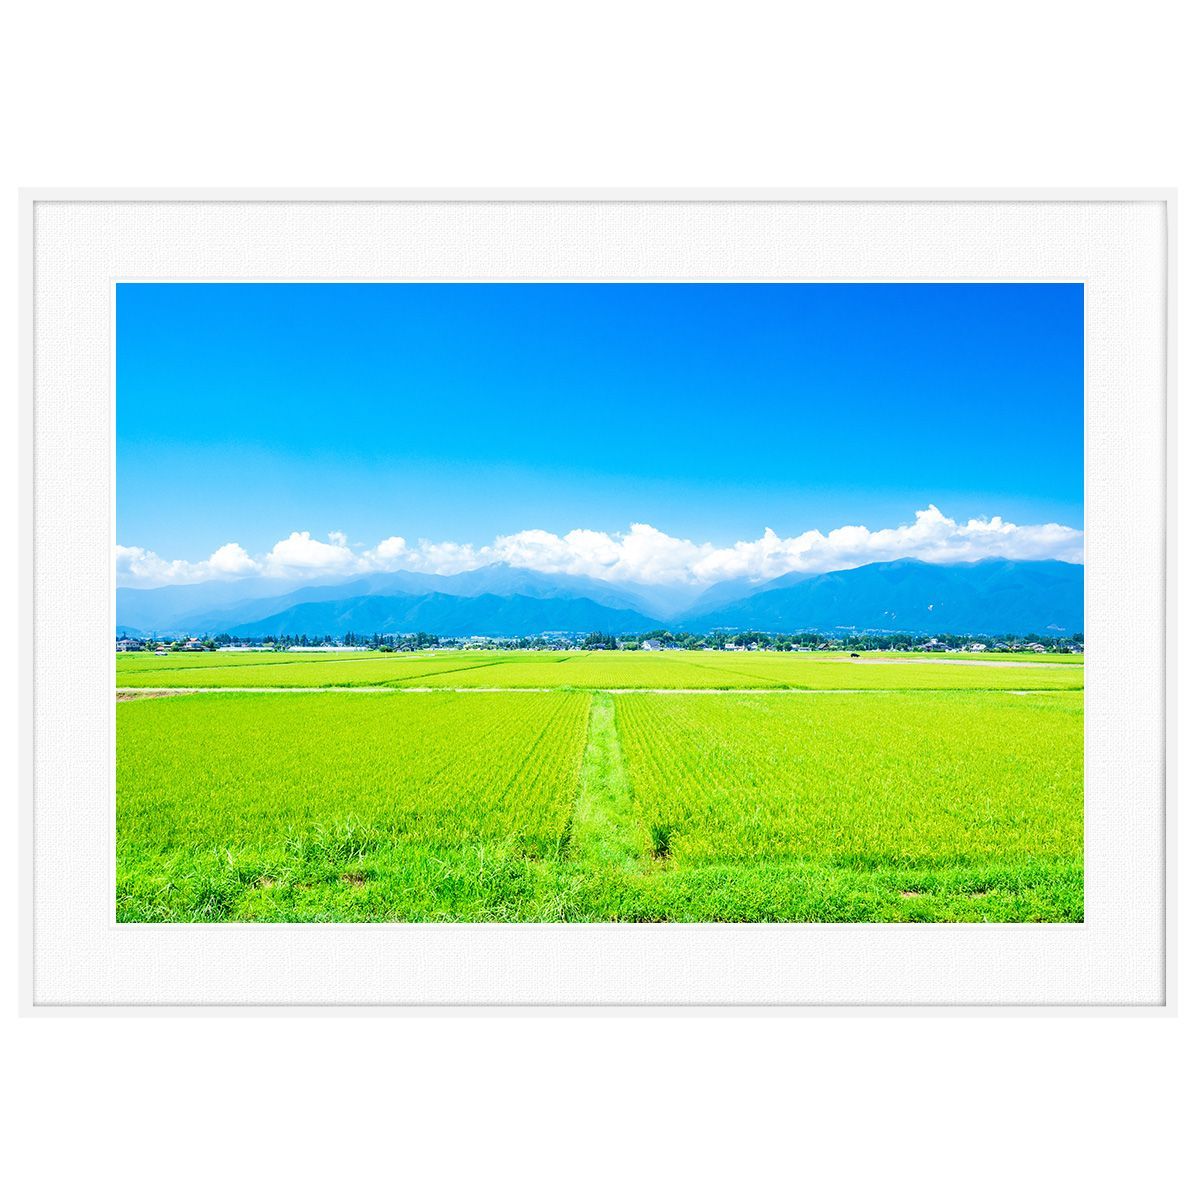 夏写真 日本 信州 長野県安曇野の田園風景 インテリアアートポスター